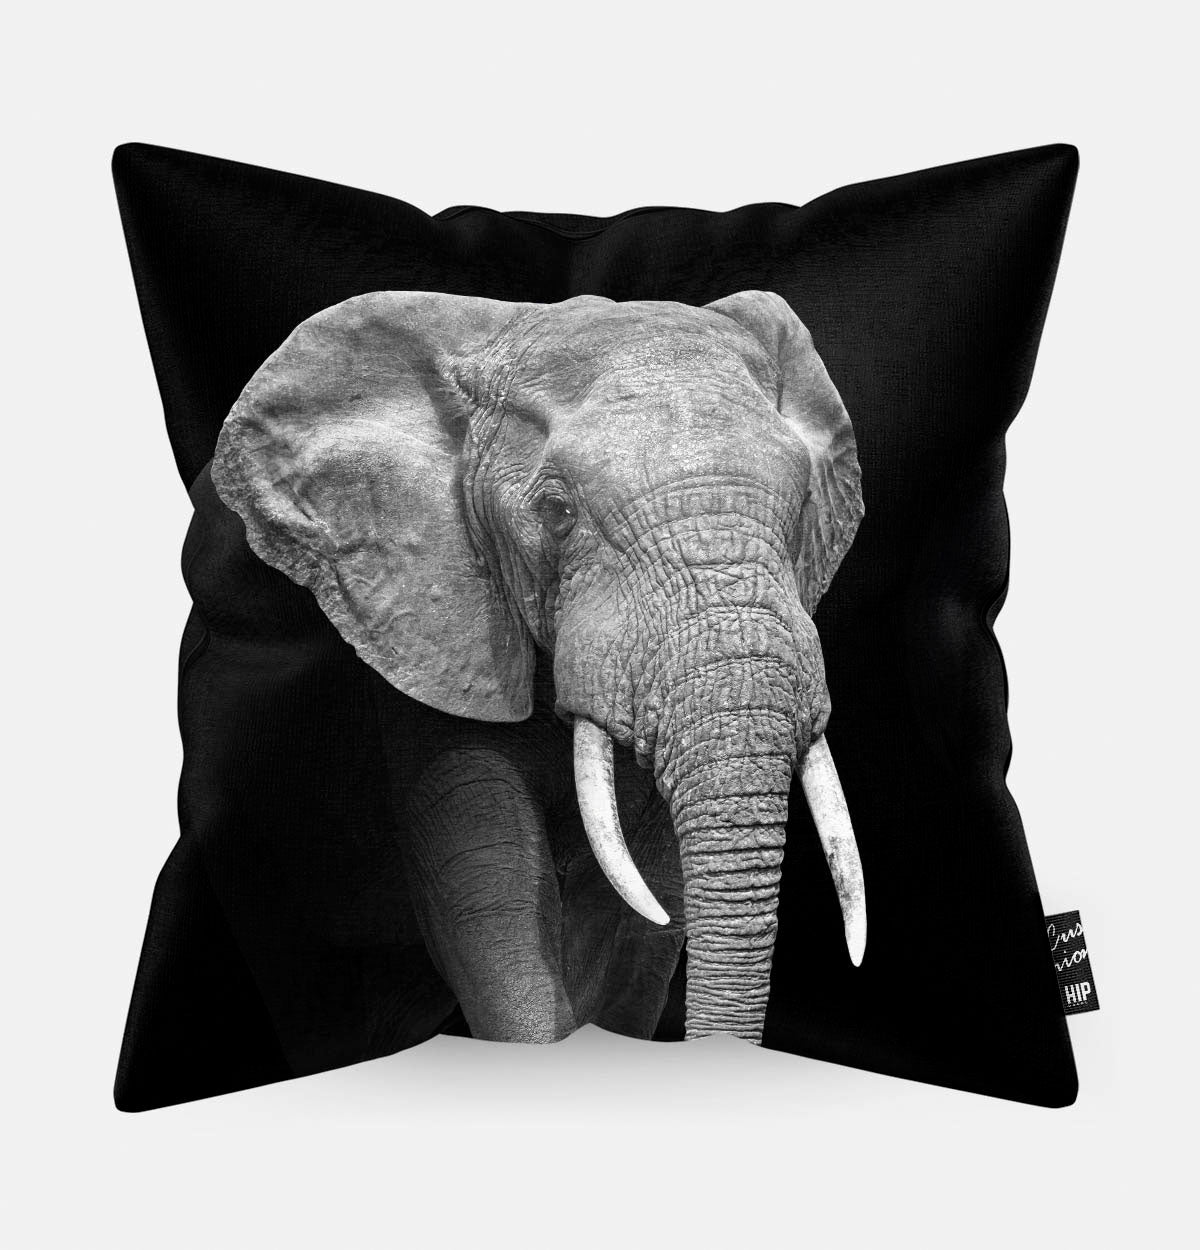 Kussen met een olifant in zwart-wit erop afgebeeld.